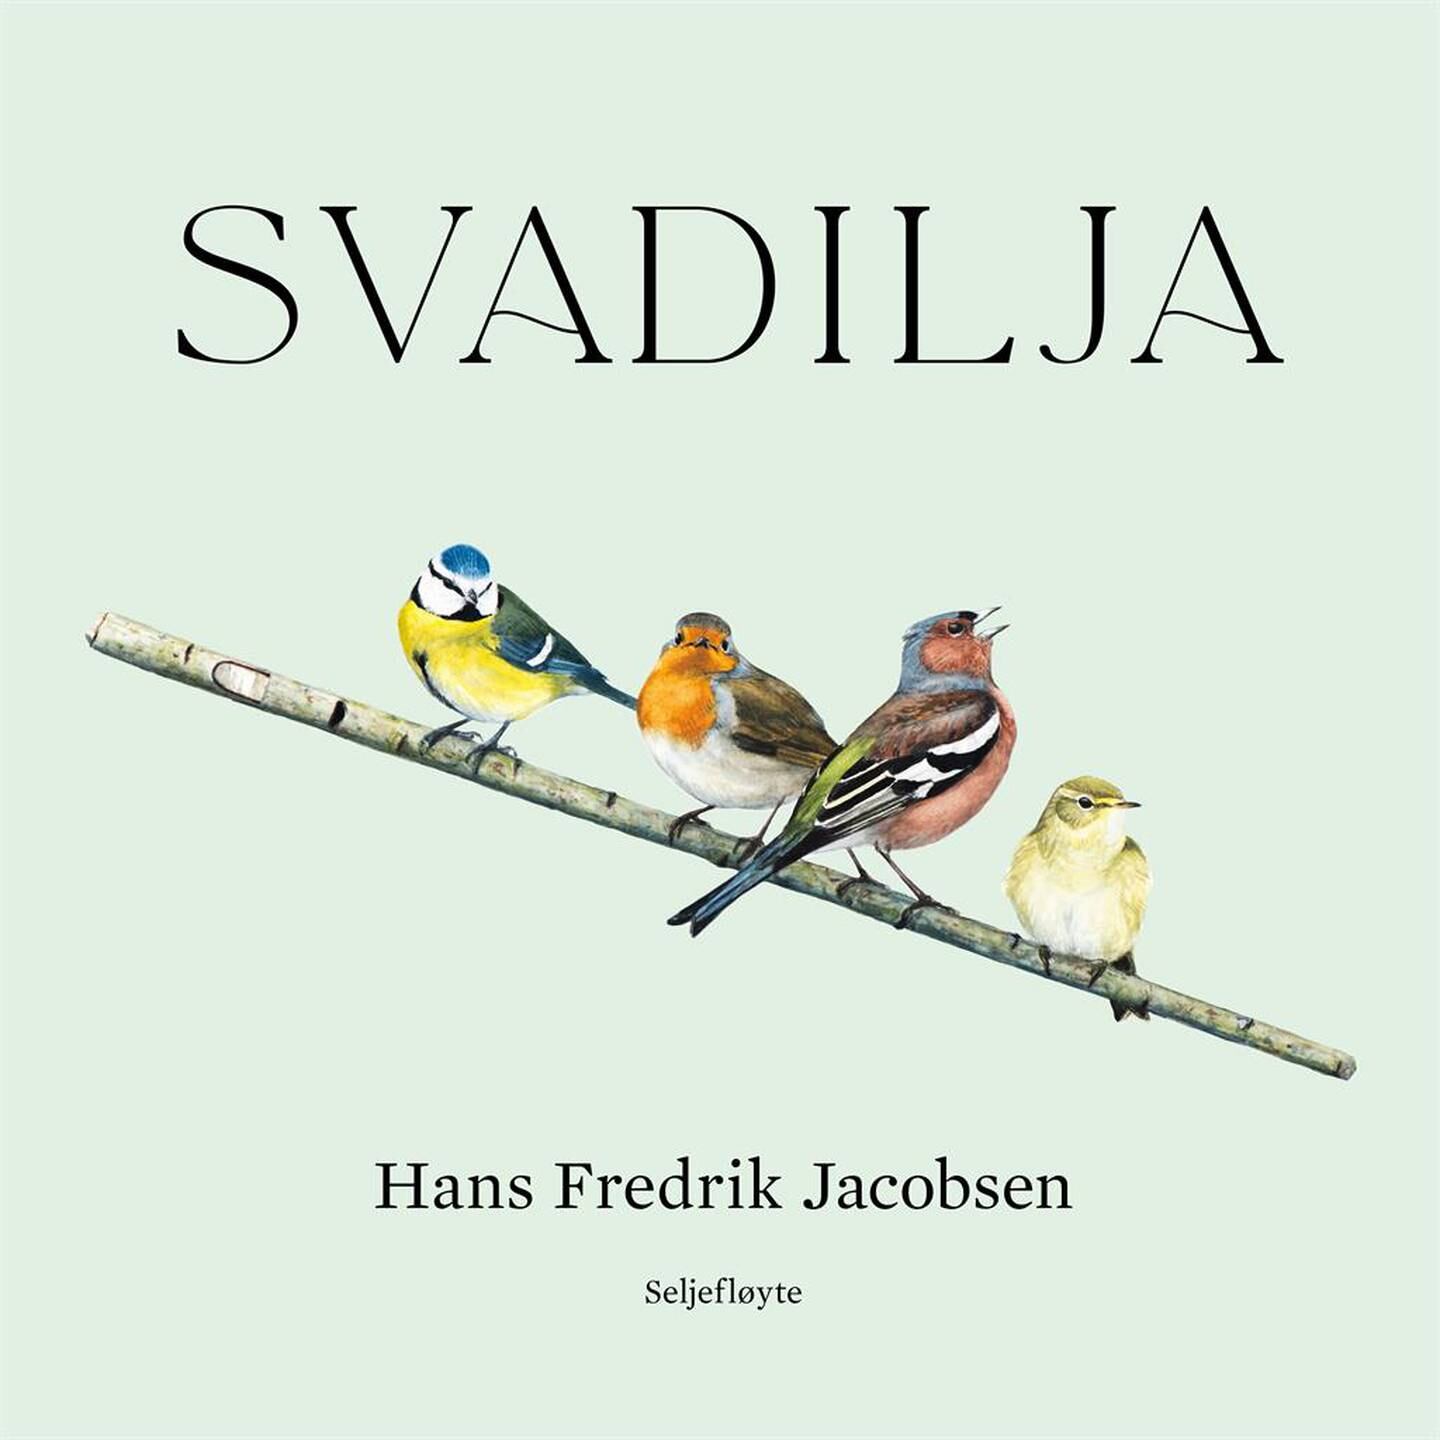 Hans Fredrik Jacobsen: Svadilja